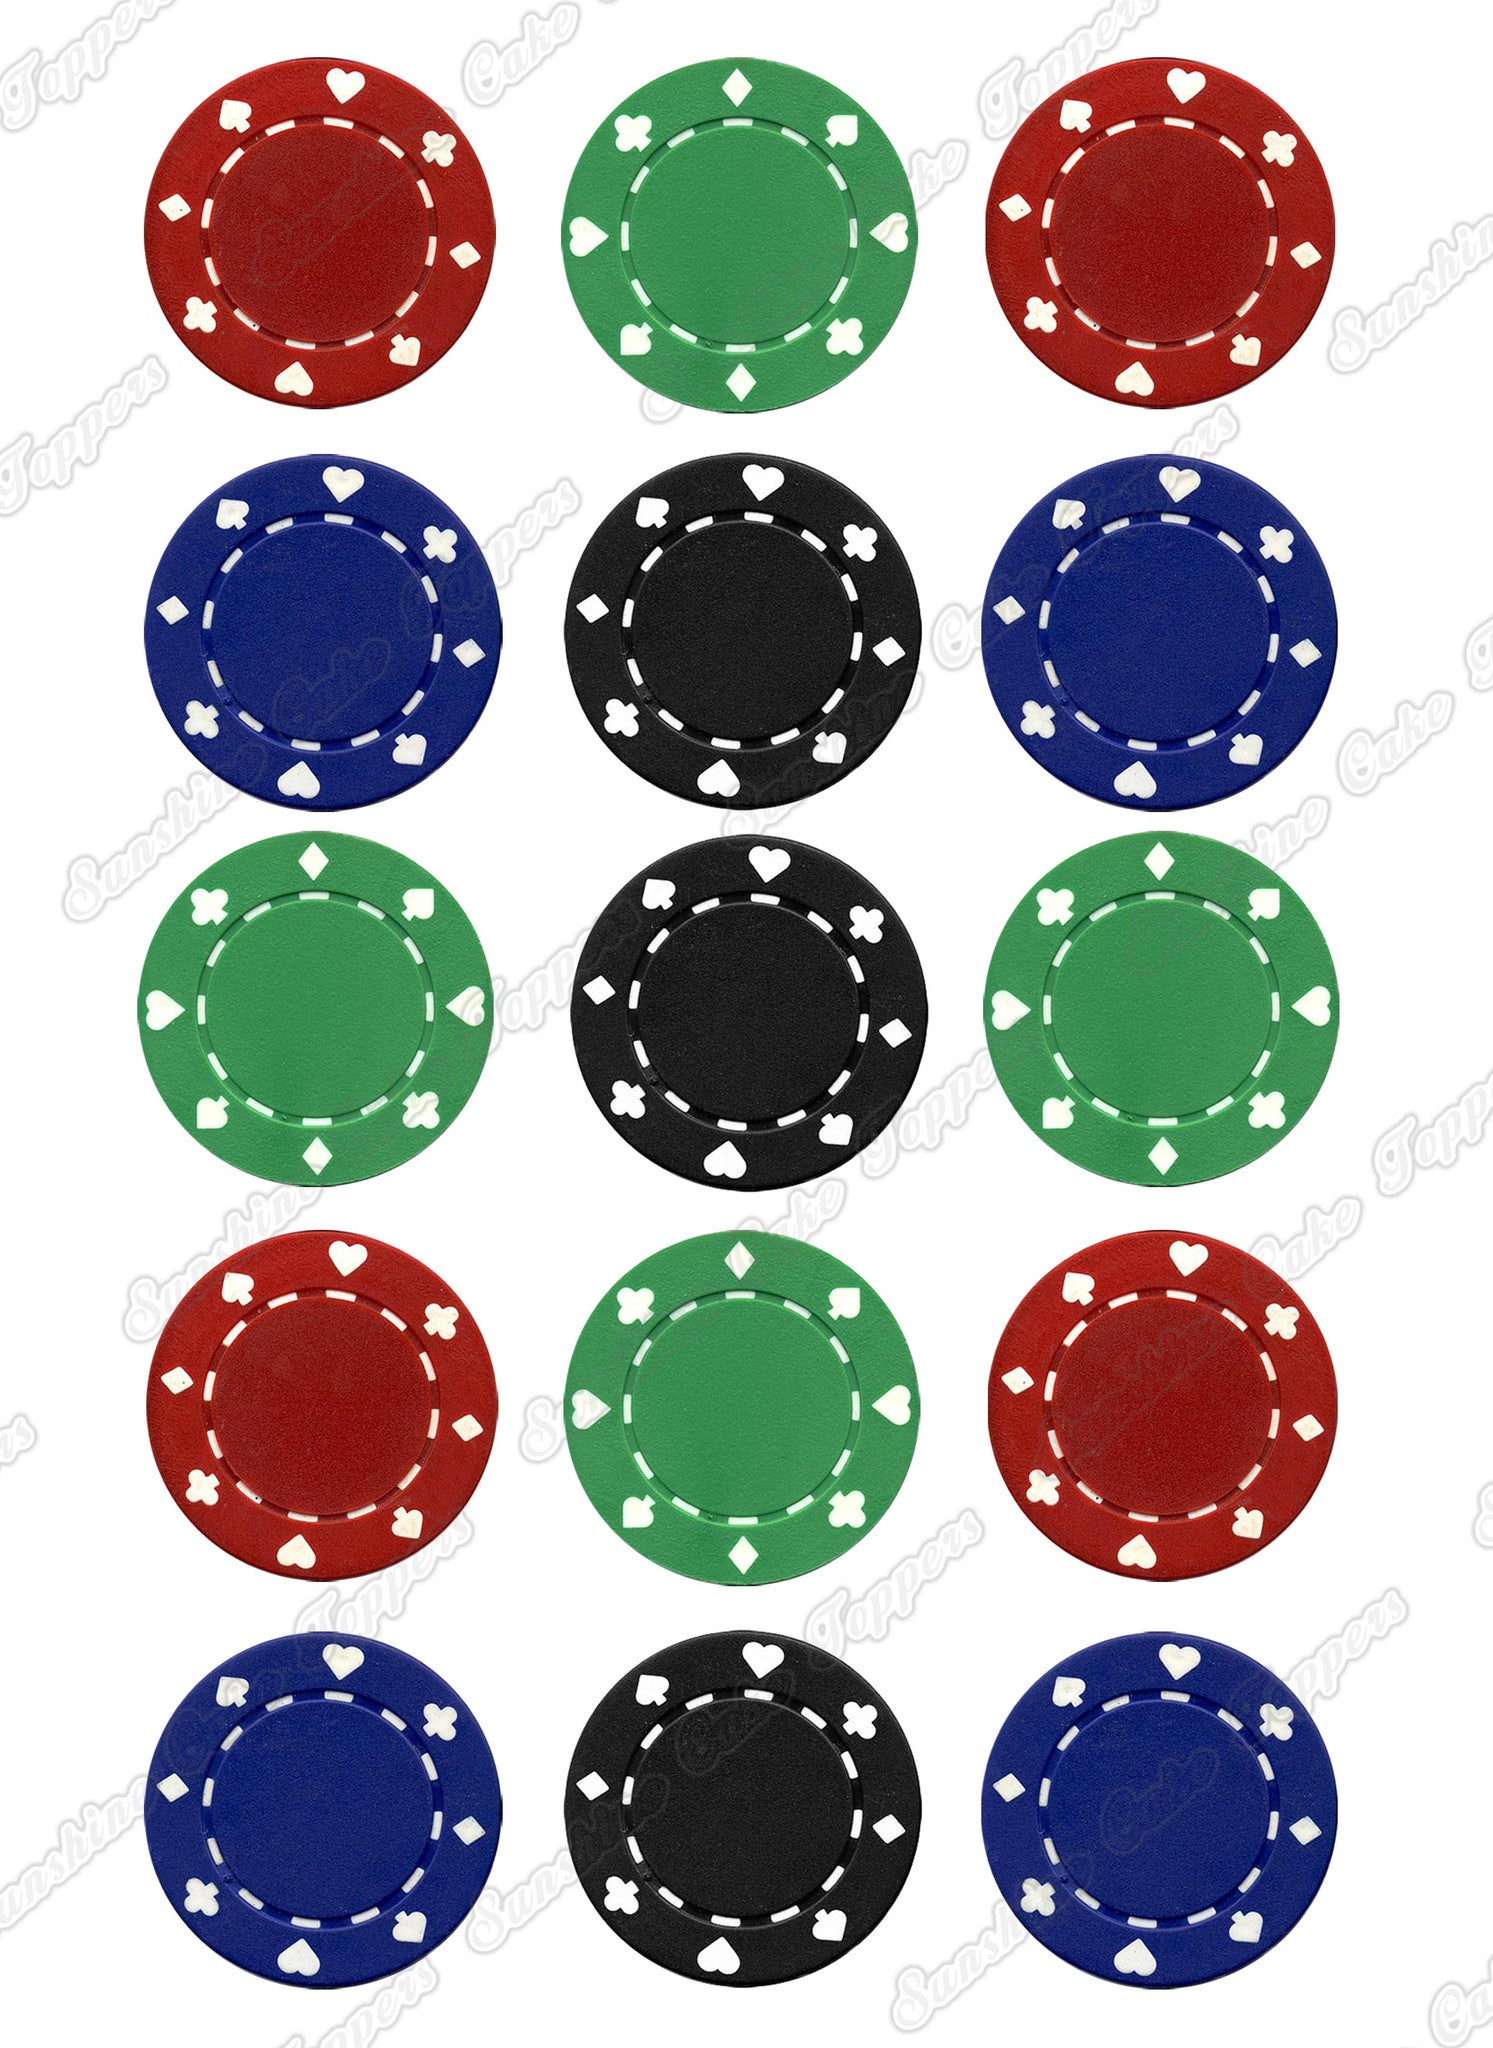 Poker Chip 2" Diameter Cake Toppers